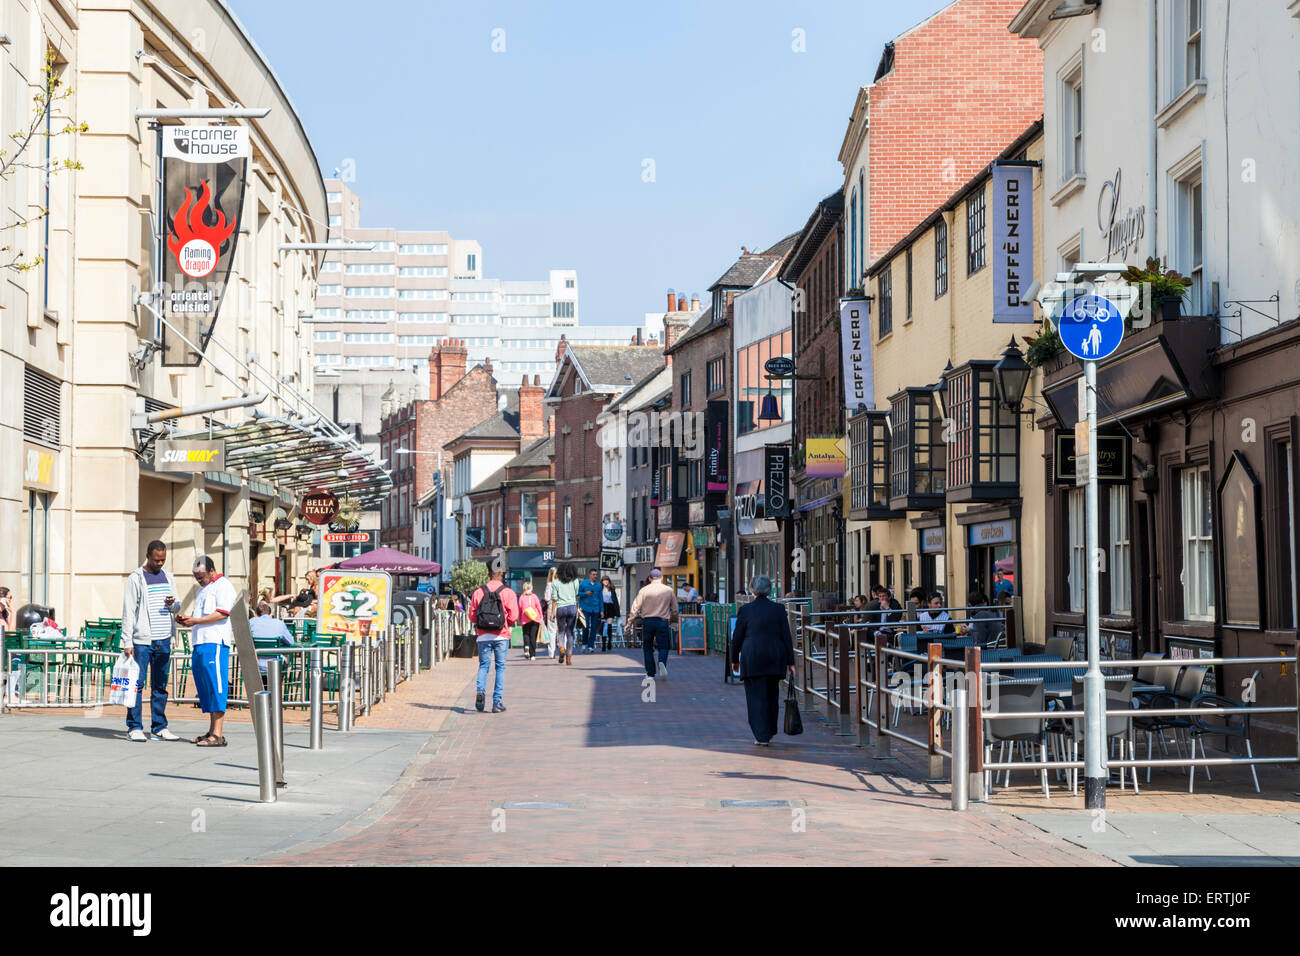 La gente en el área peatonal del centro de la ciudad de Nottingham, con muchos cafés y restaurantes populares. Forman Street, Nottingham, Inglaterra, Reino Unido. Foto de stock